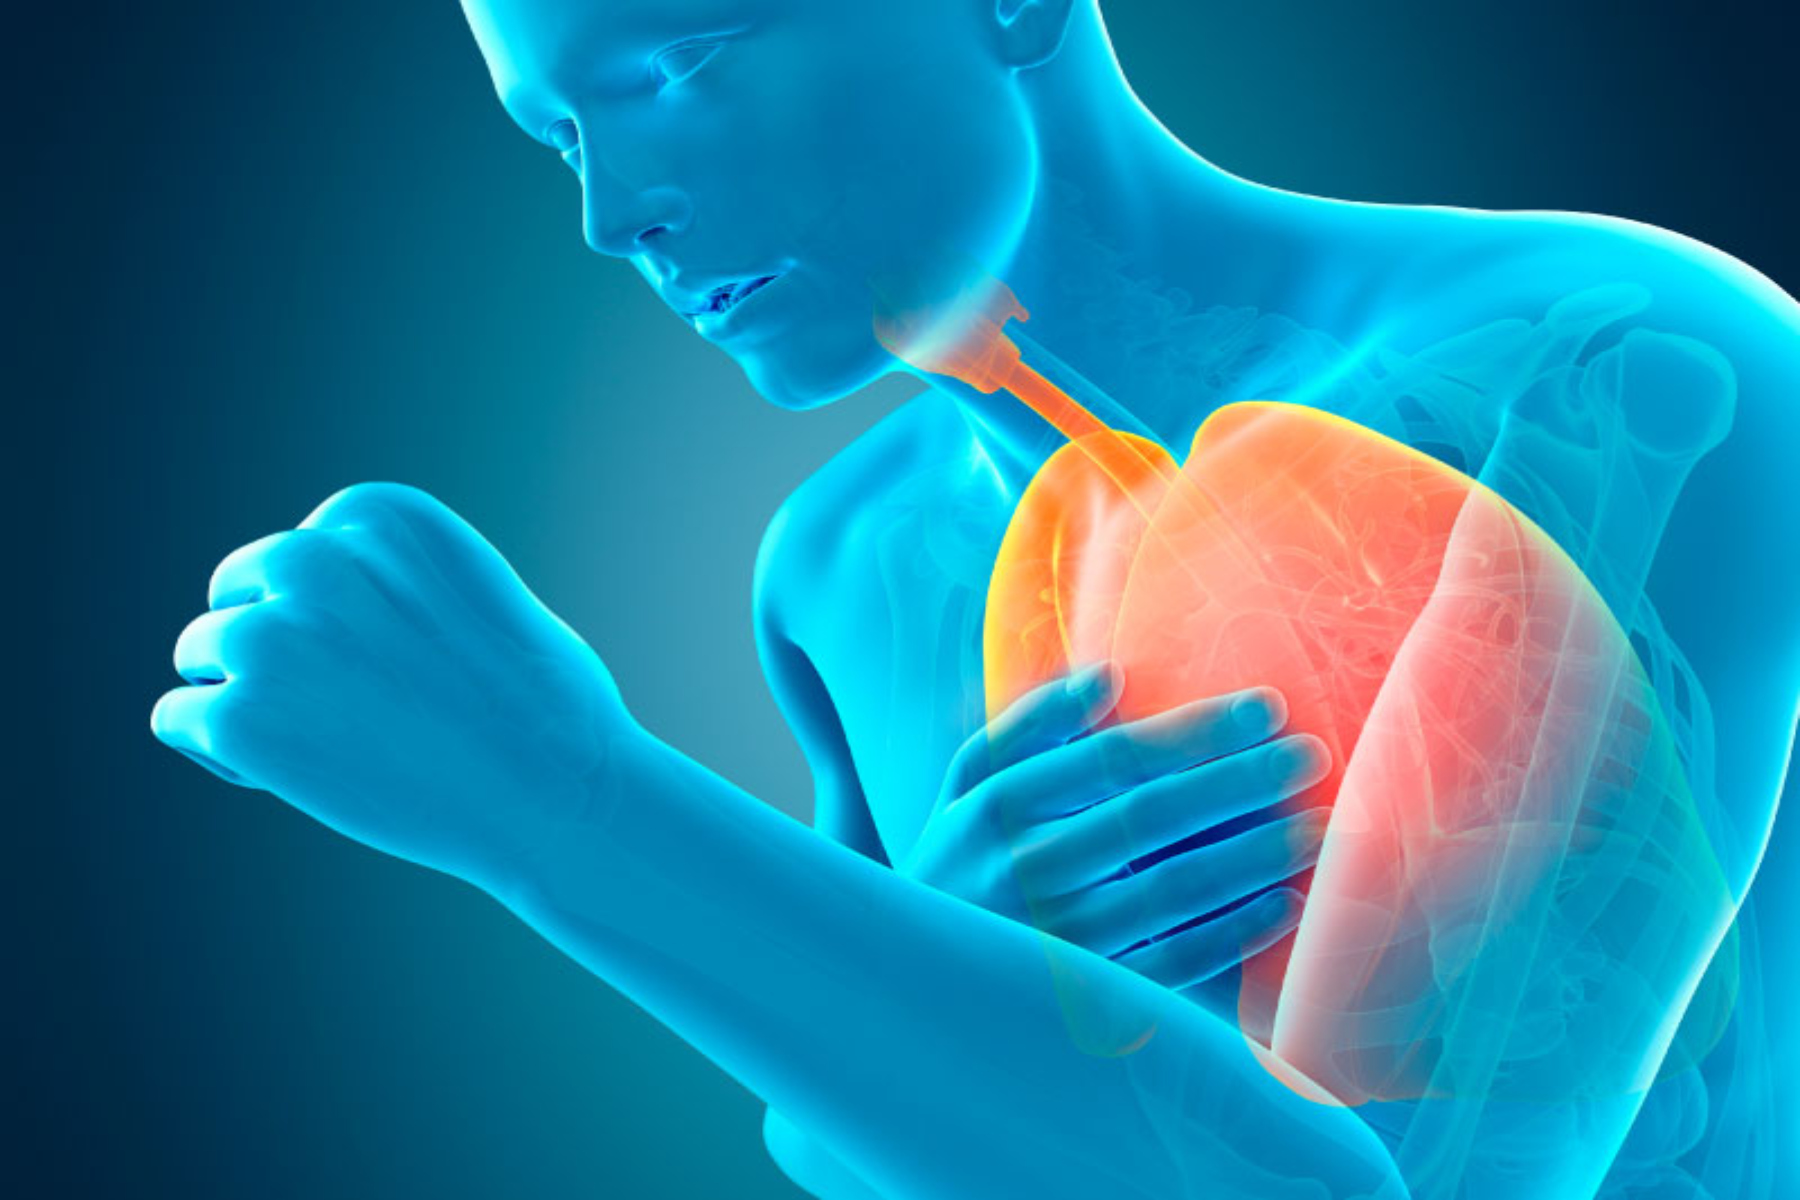 ΧΑΠ: Μελέτη αποκαλύπτει τα αίτια θανάτου από τη Χρόνια Αποφρακτική Πνευμονοπάθεια